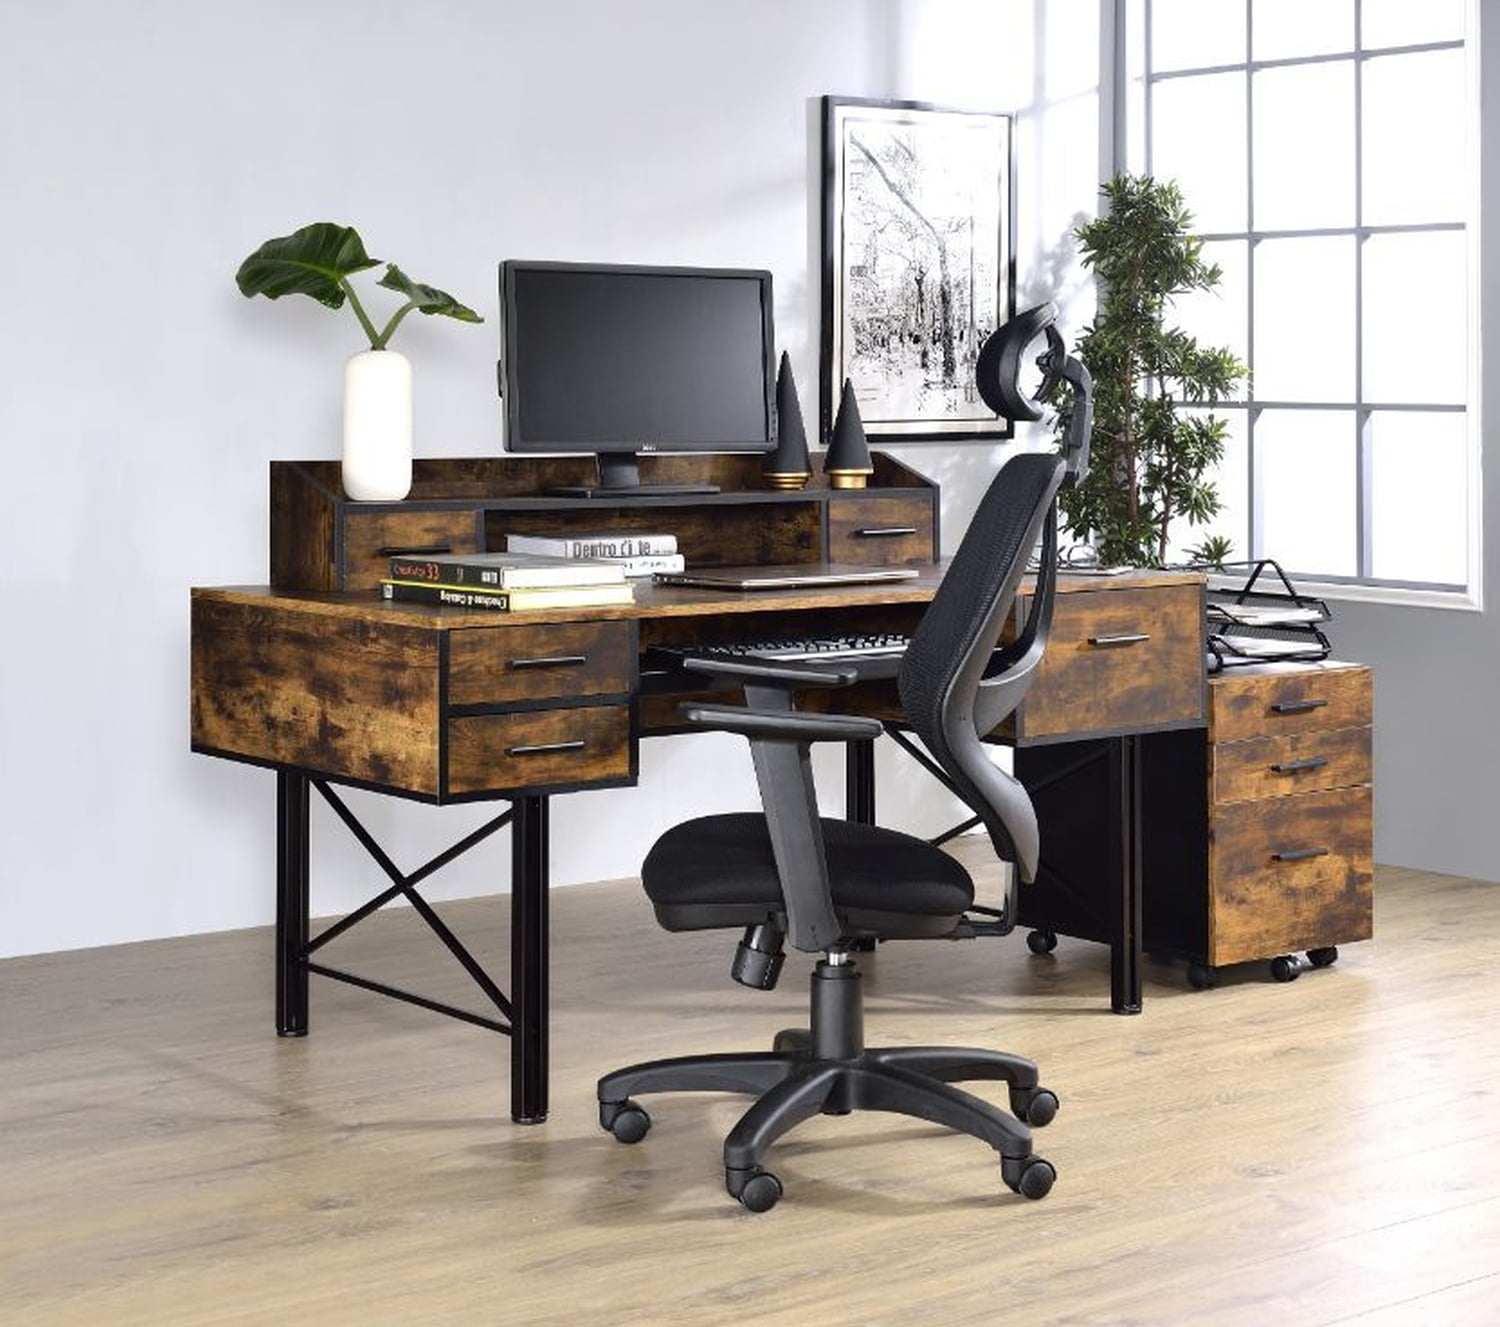 OFFICE DESK study workstation student desk executive desk office furniture desks 